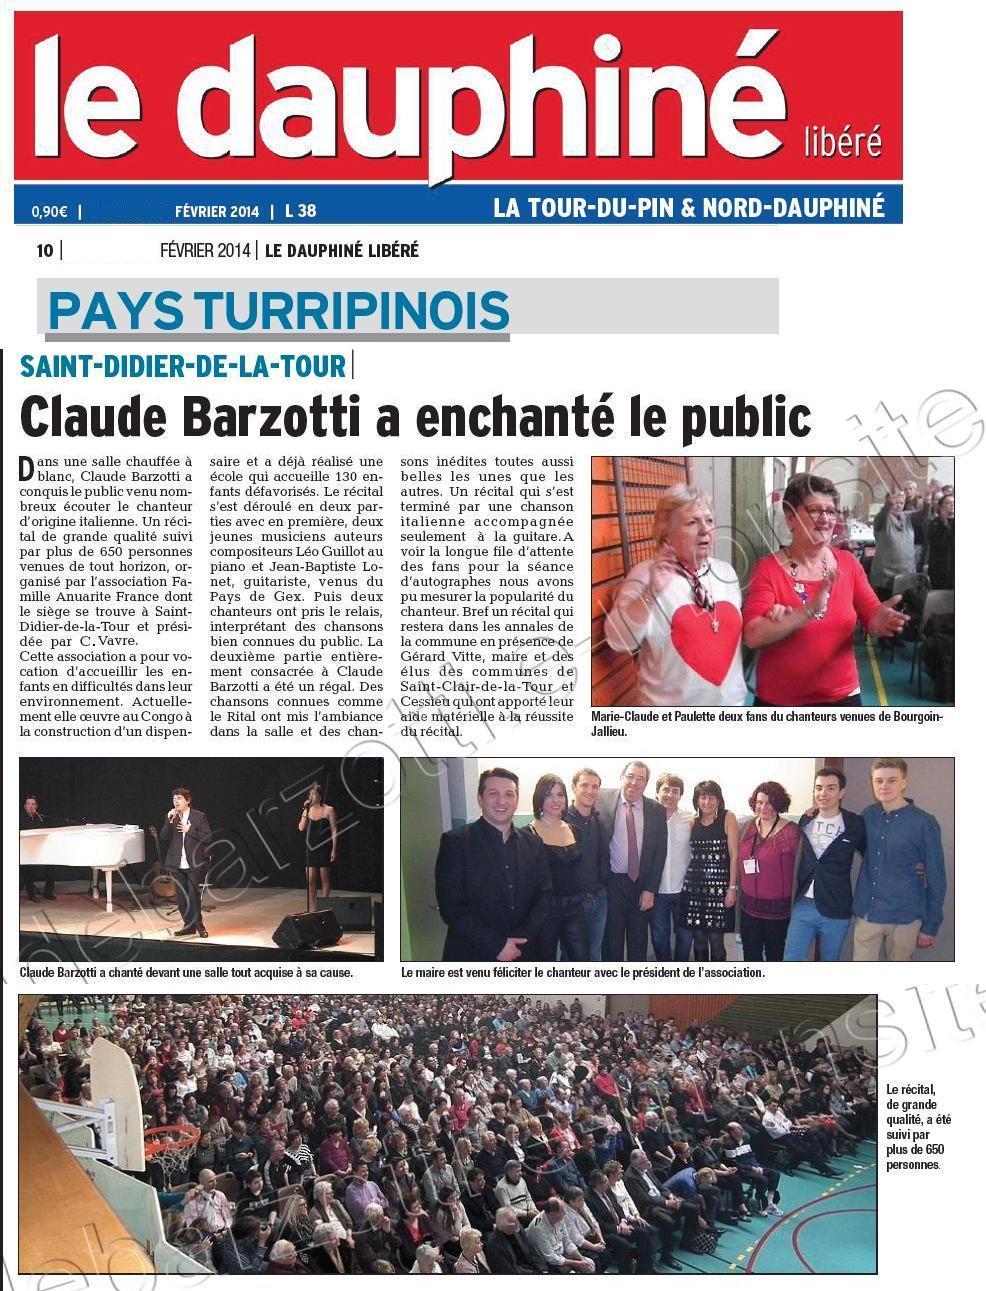 Le Dauphiné libéré La tour du pin du mercredi 12 février 2014 page 10 (1 page + photos) Claude Barzotti a enchanté le public à St Didier de la Tour